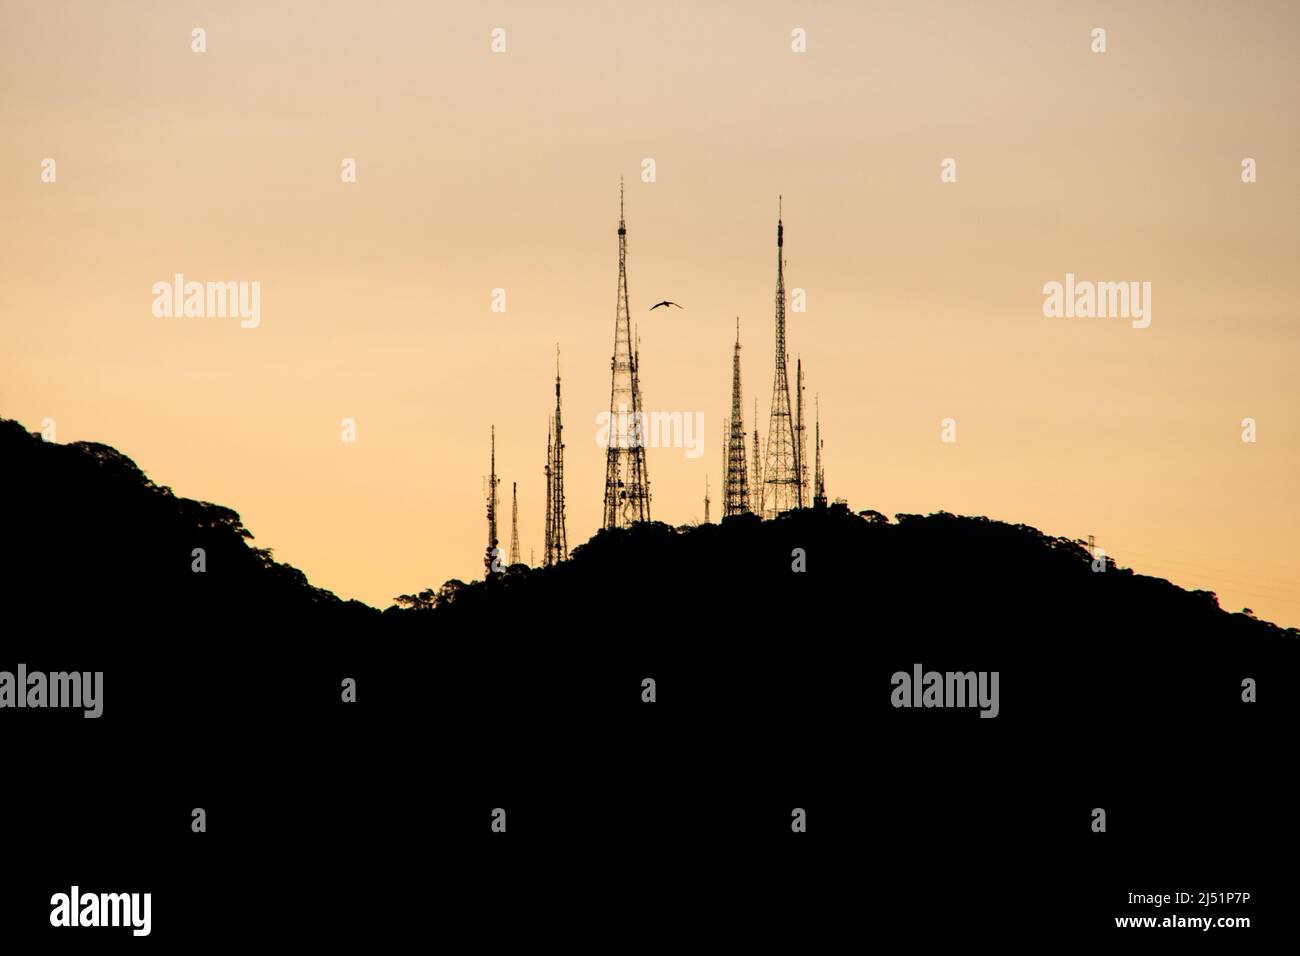 Silhouette des antennes de sumare avec un beau ciel orange, vue depuis le quartier de la lagune à Rio de Janeiro. Banque D'Images